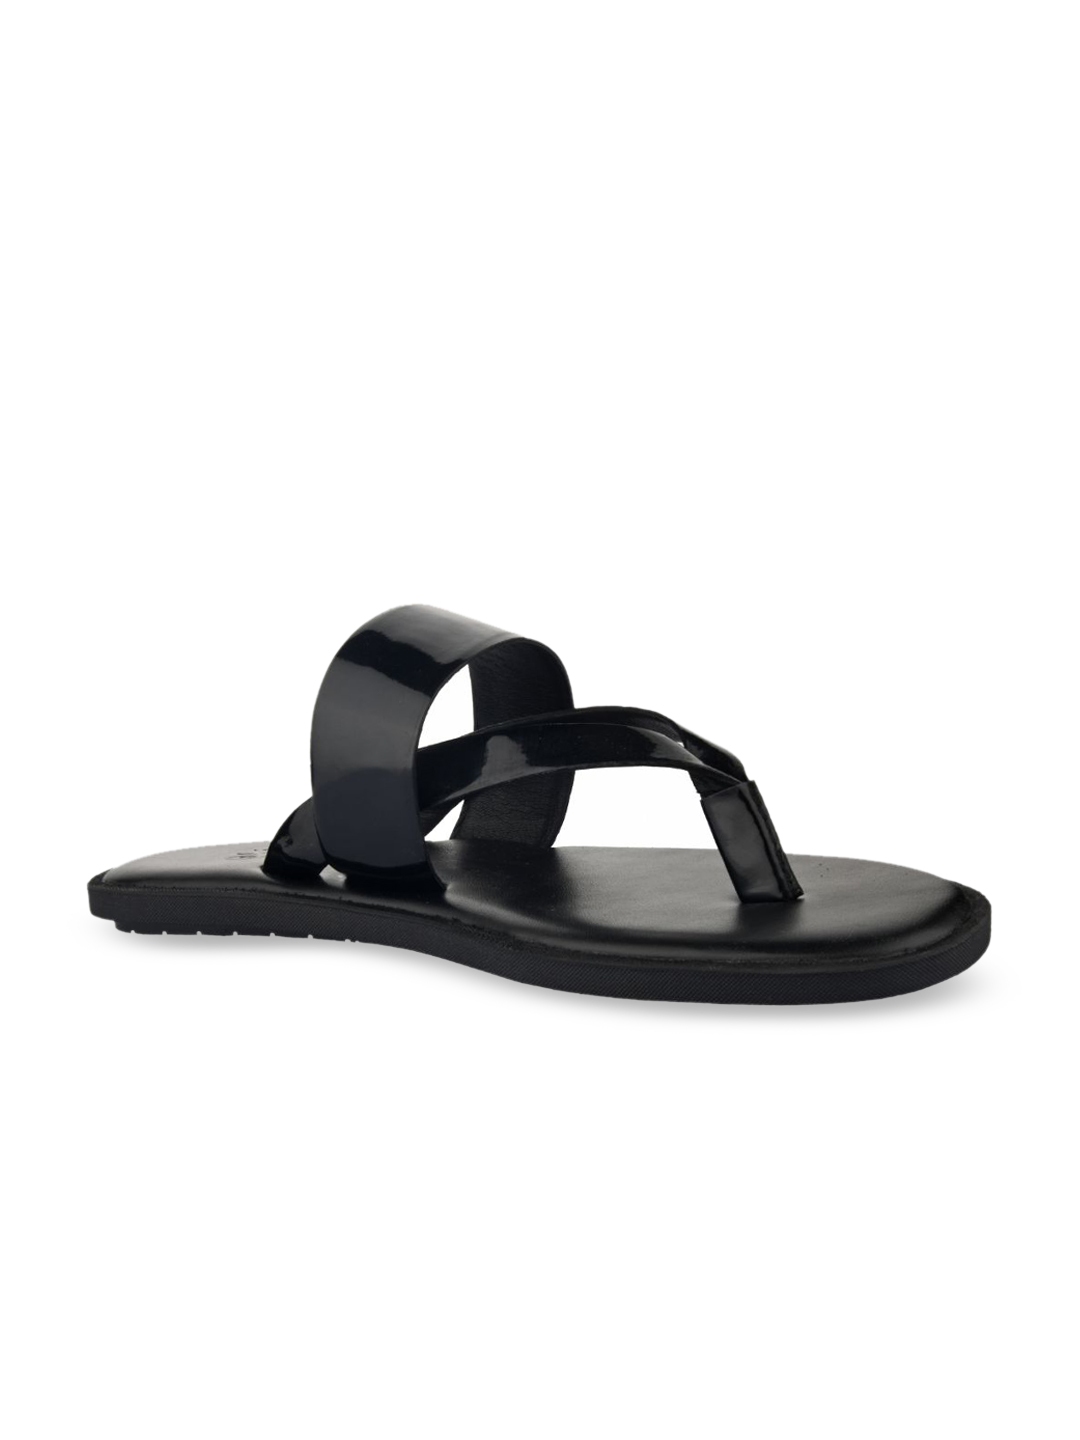 Buy SKO Men Black Solid Leather Comfort Sandals - Sandals for Men ...